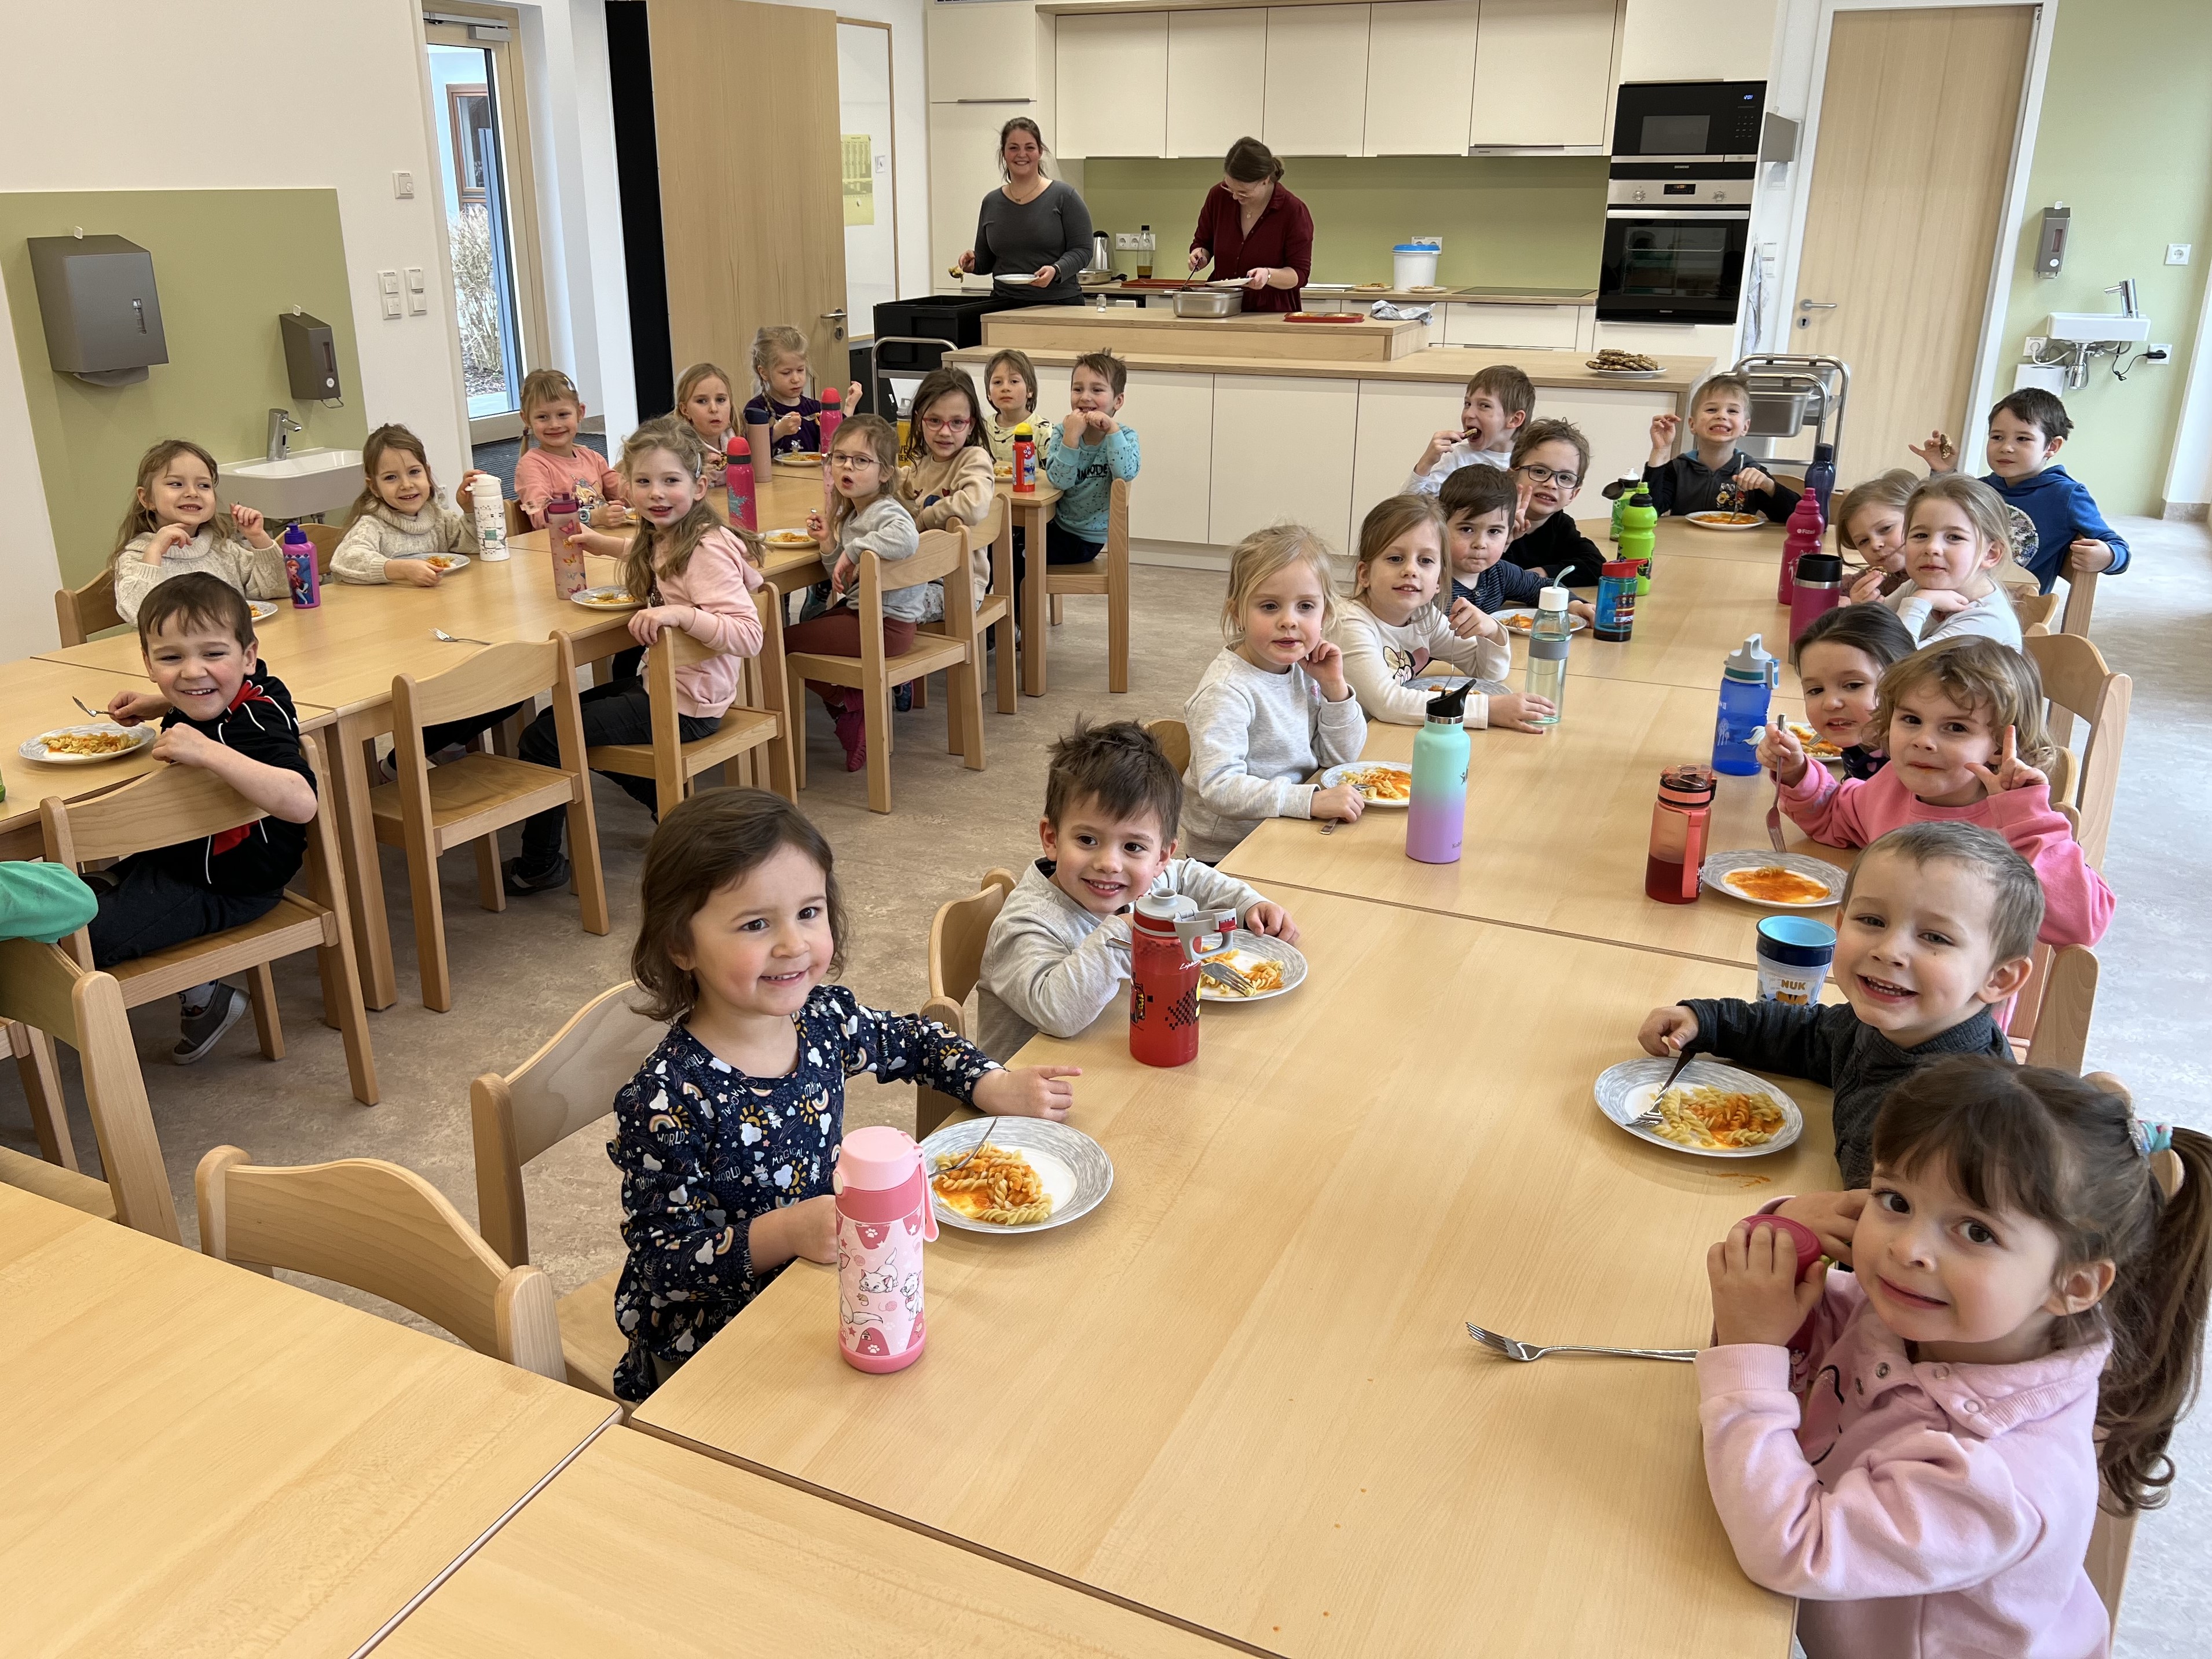  Die strahlenden Augen sagen alles: Im neuen lichtdurchfluteten Speiseraum können nun alle Mittagskinder gemeinsam die warmen Mahlzeiten einnehmen. 